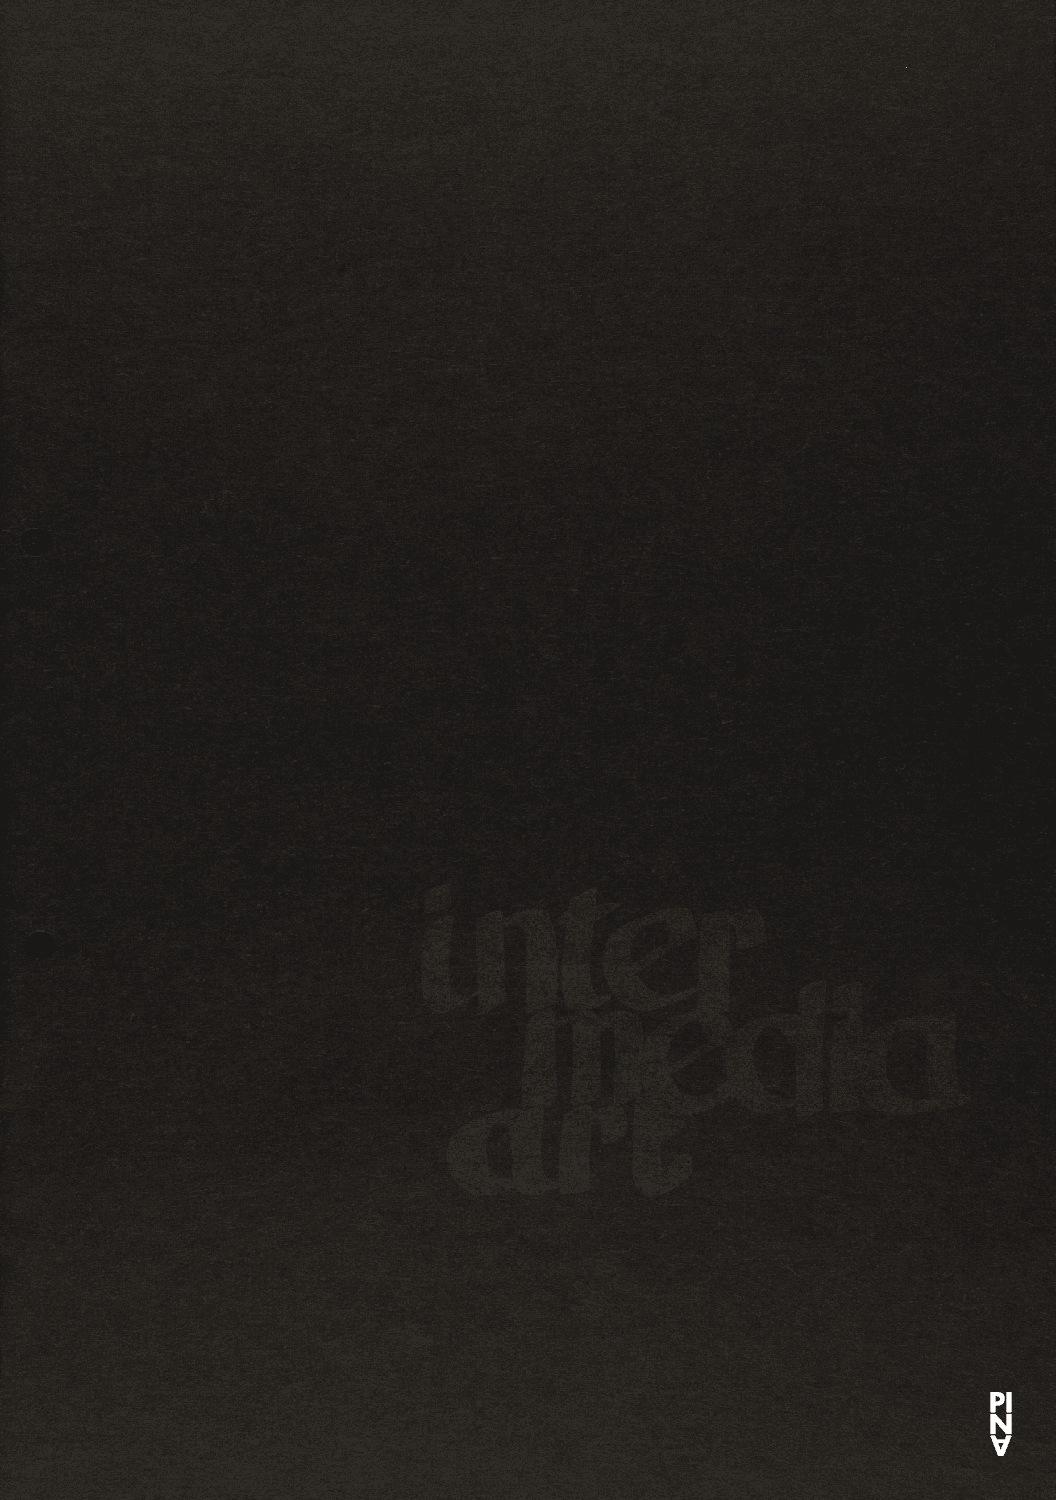 Booklet for “Nachnull (After Zero)” and “Im Wind der Zeit” by Pina Bausch with Folkwangballett and “Estremadura”, “Die Pflanze” and “Sketch” by Sieglinde Wiedemann with Intermedia Art in in Munich, Jan. 8, 1970